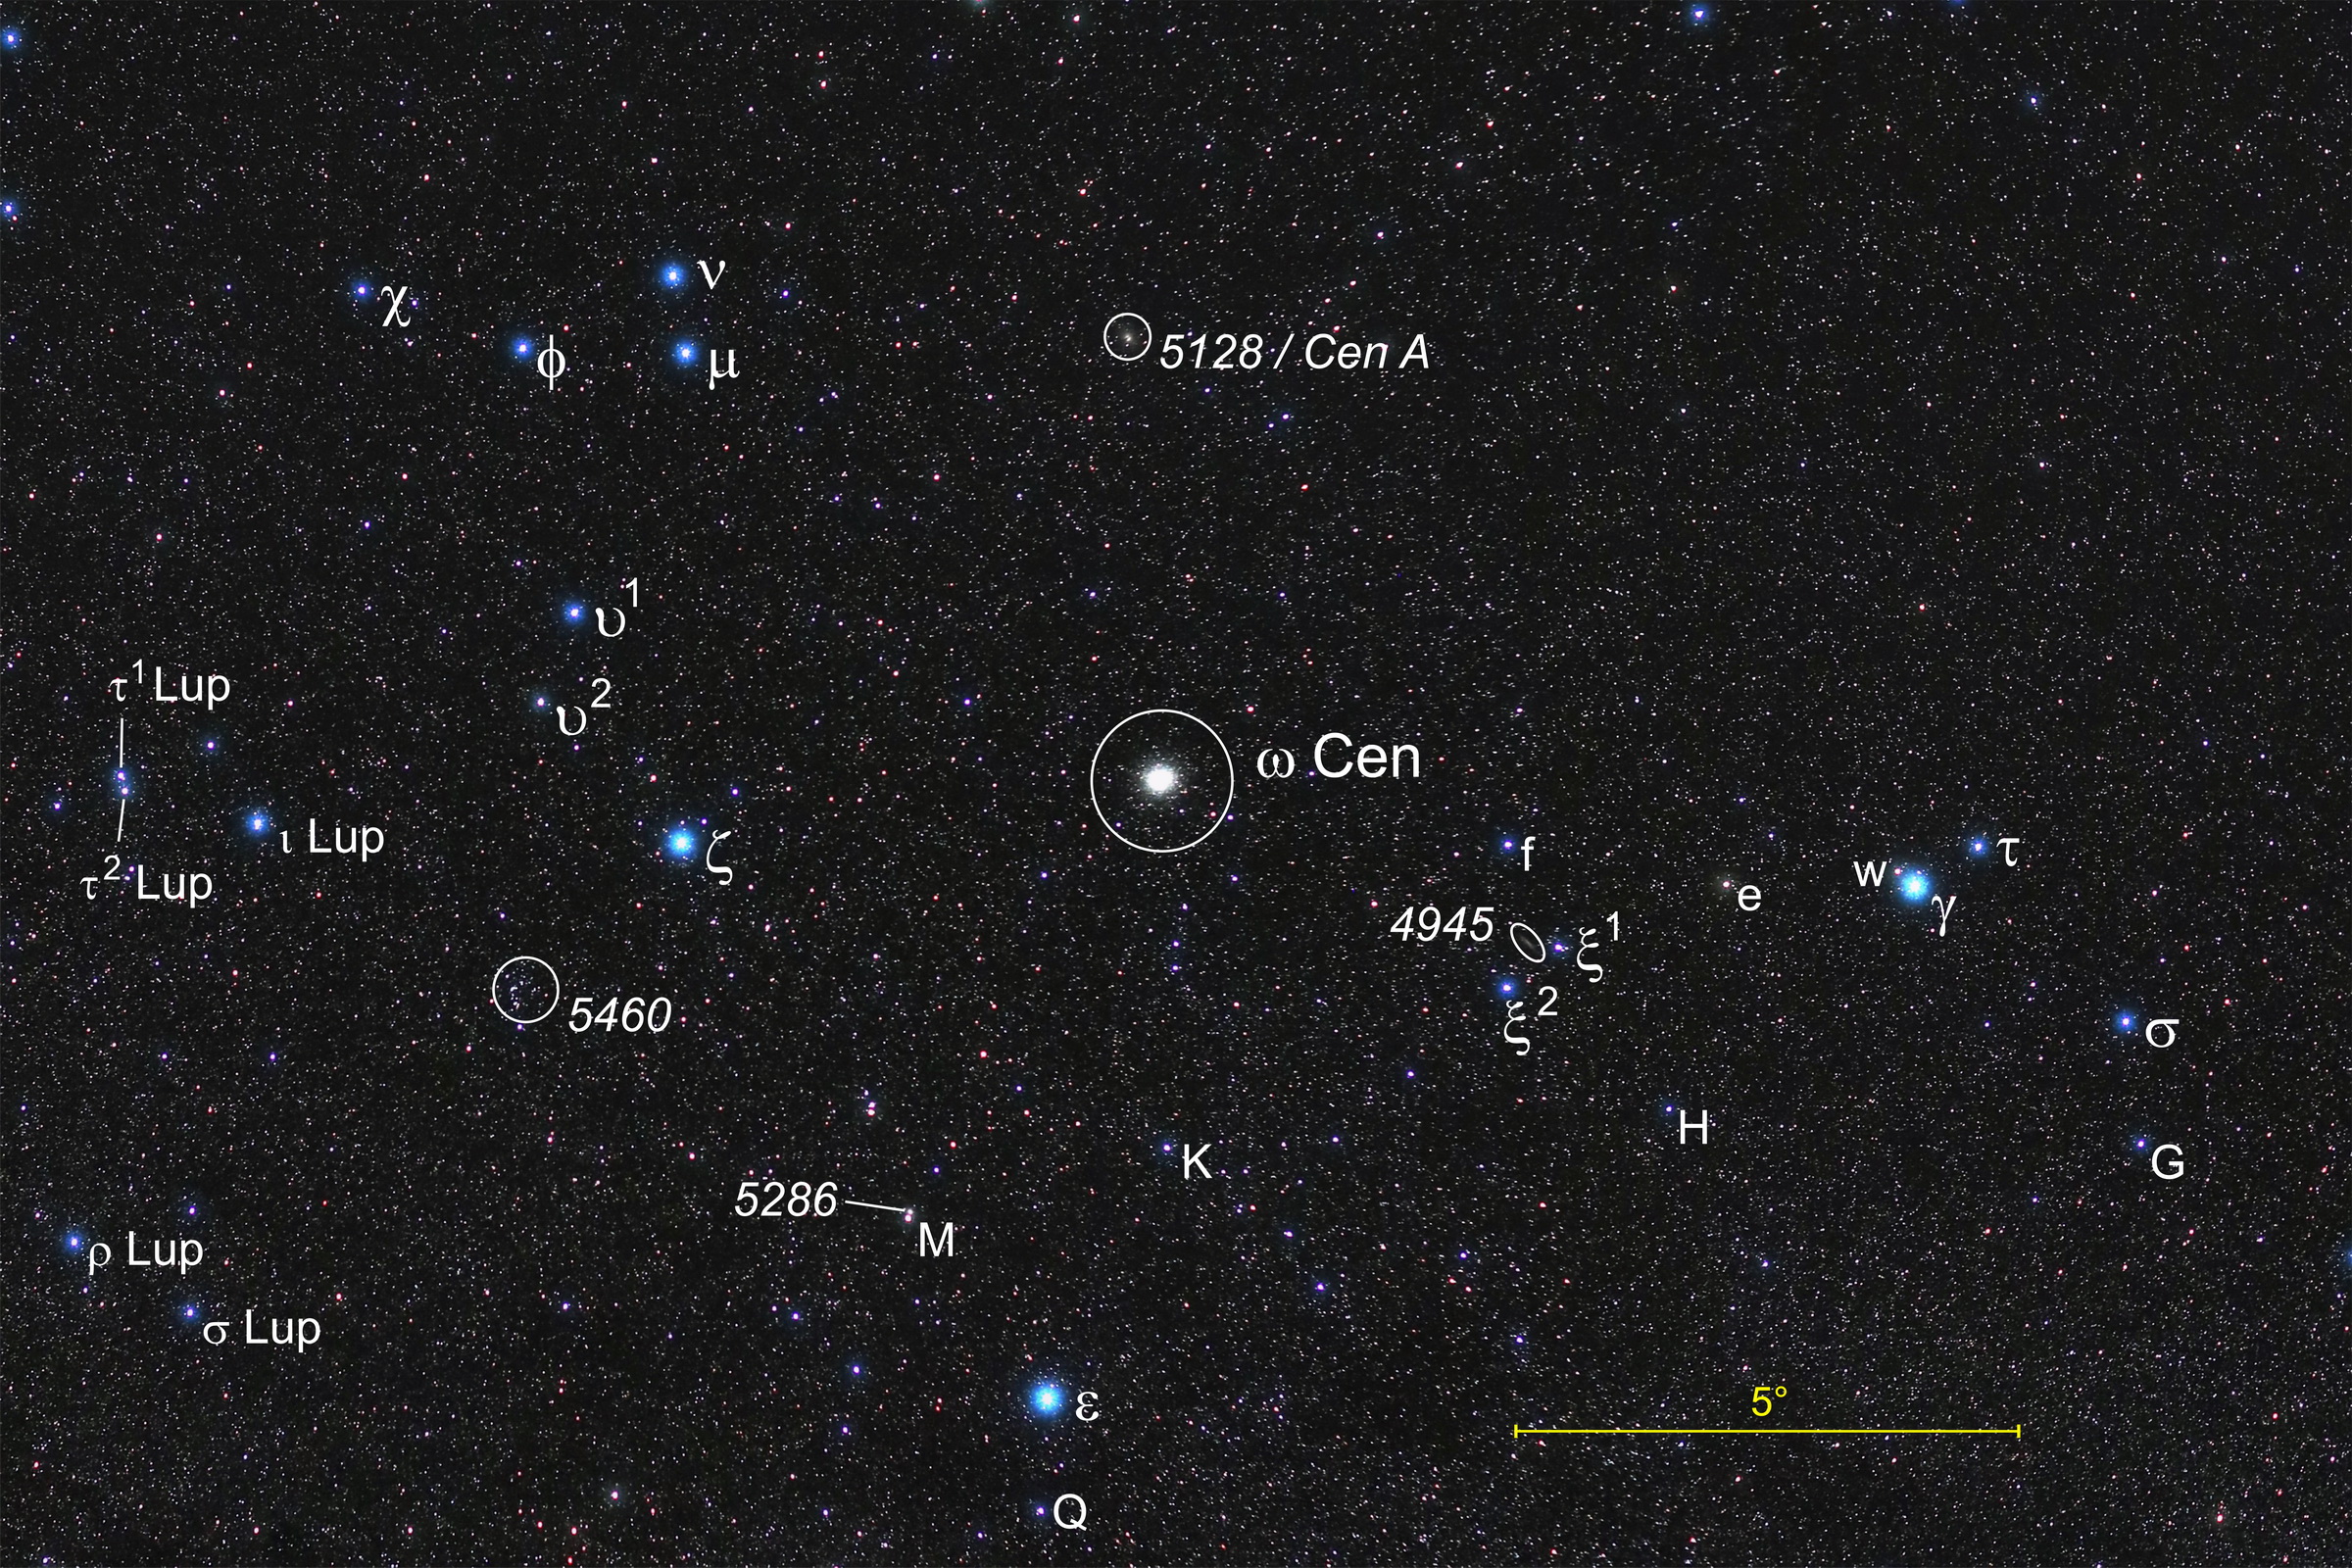 Die Umgebung des Kugelsternhaufens Omega Centauri mit beschrifteten Objekten